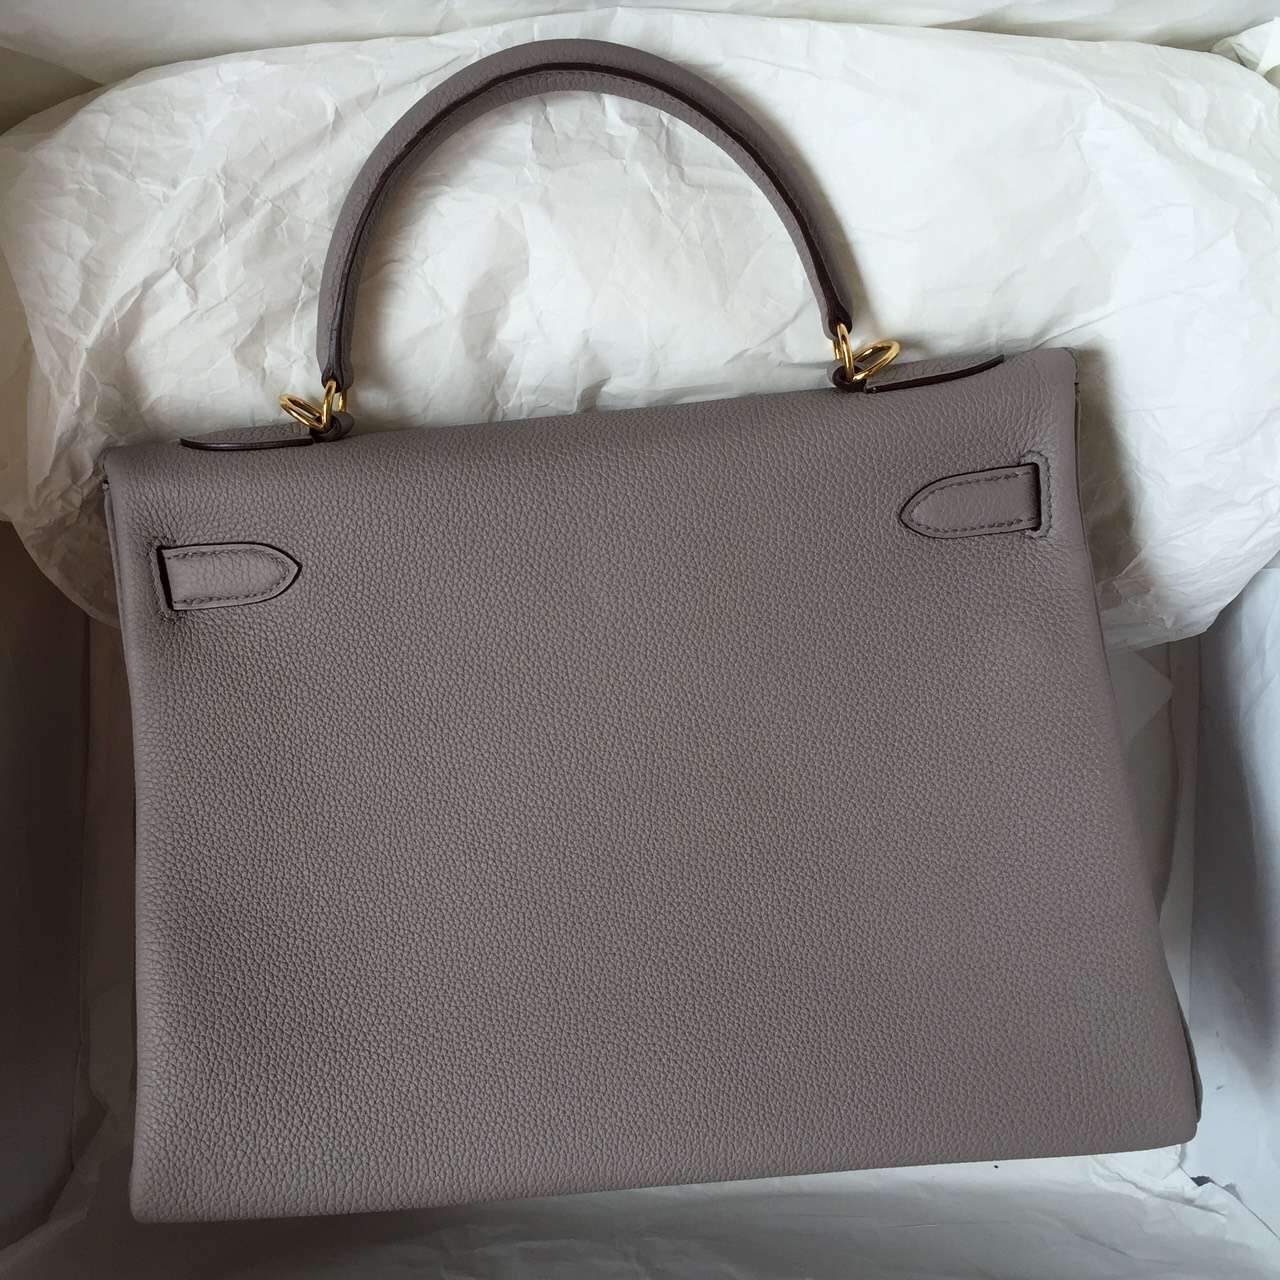 Hermes Kelly Bag 32CM Retourne Light Etain Grey Togo Leather Women&#8217;s Handbag